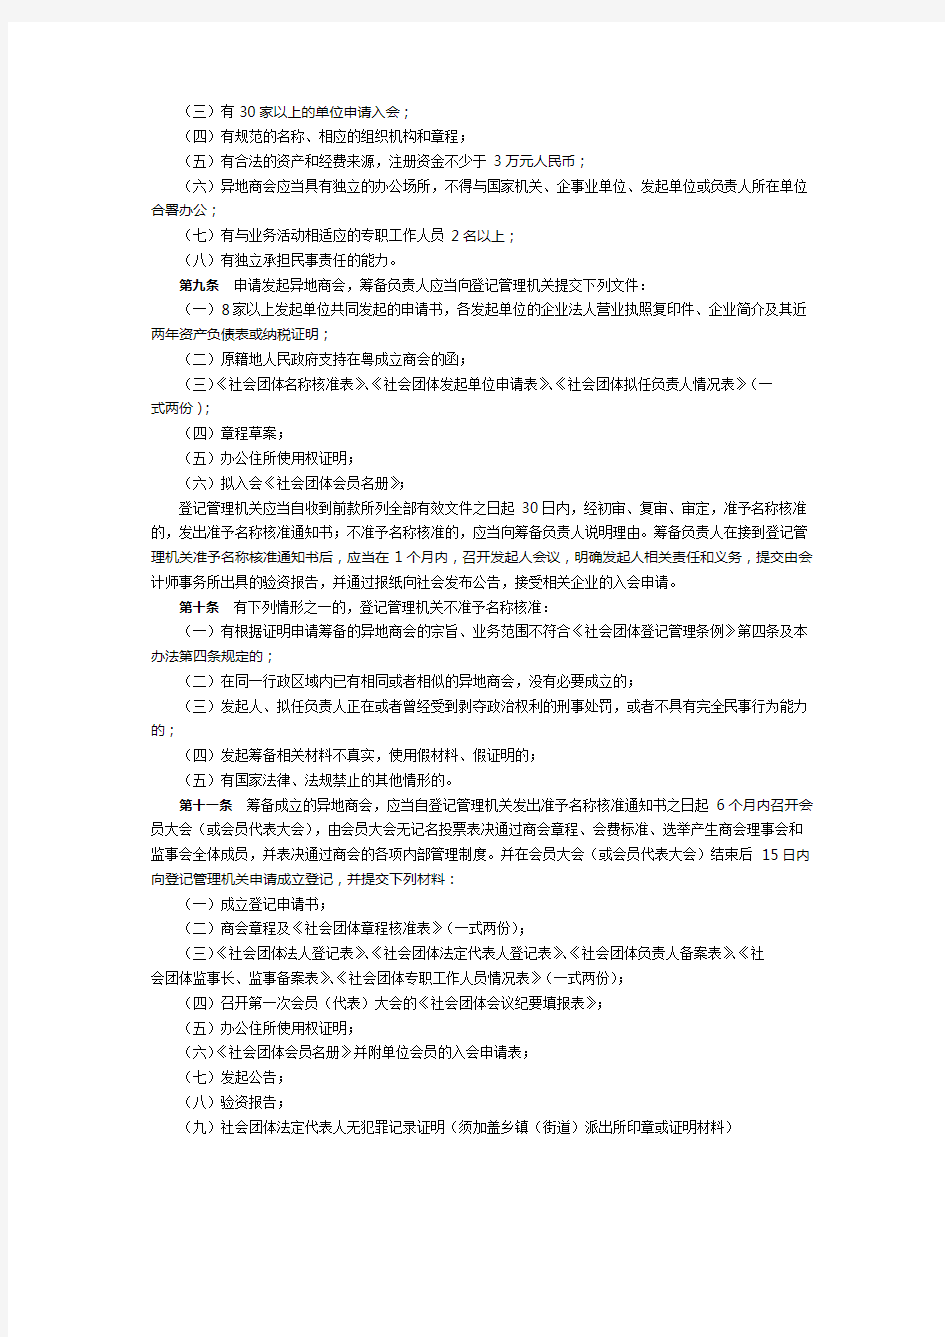 广东省民政厅关于异地商会登记的管理办法